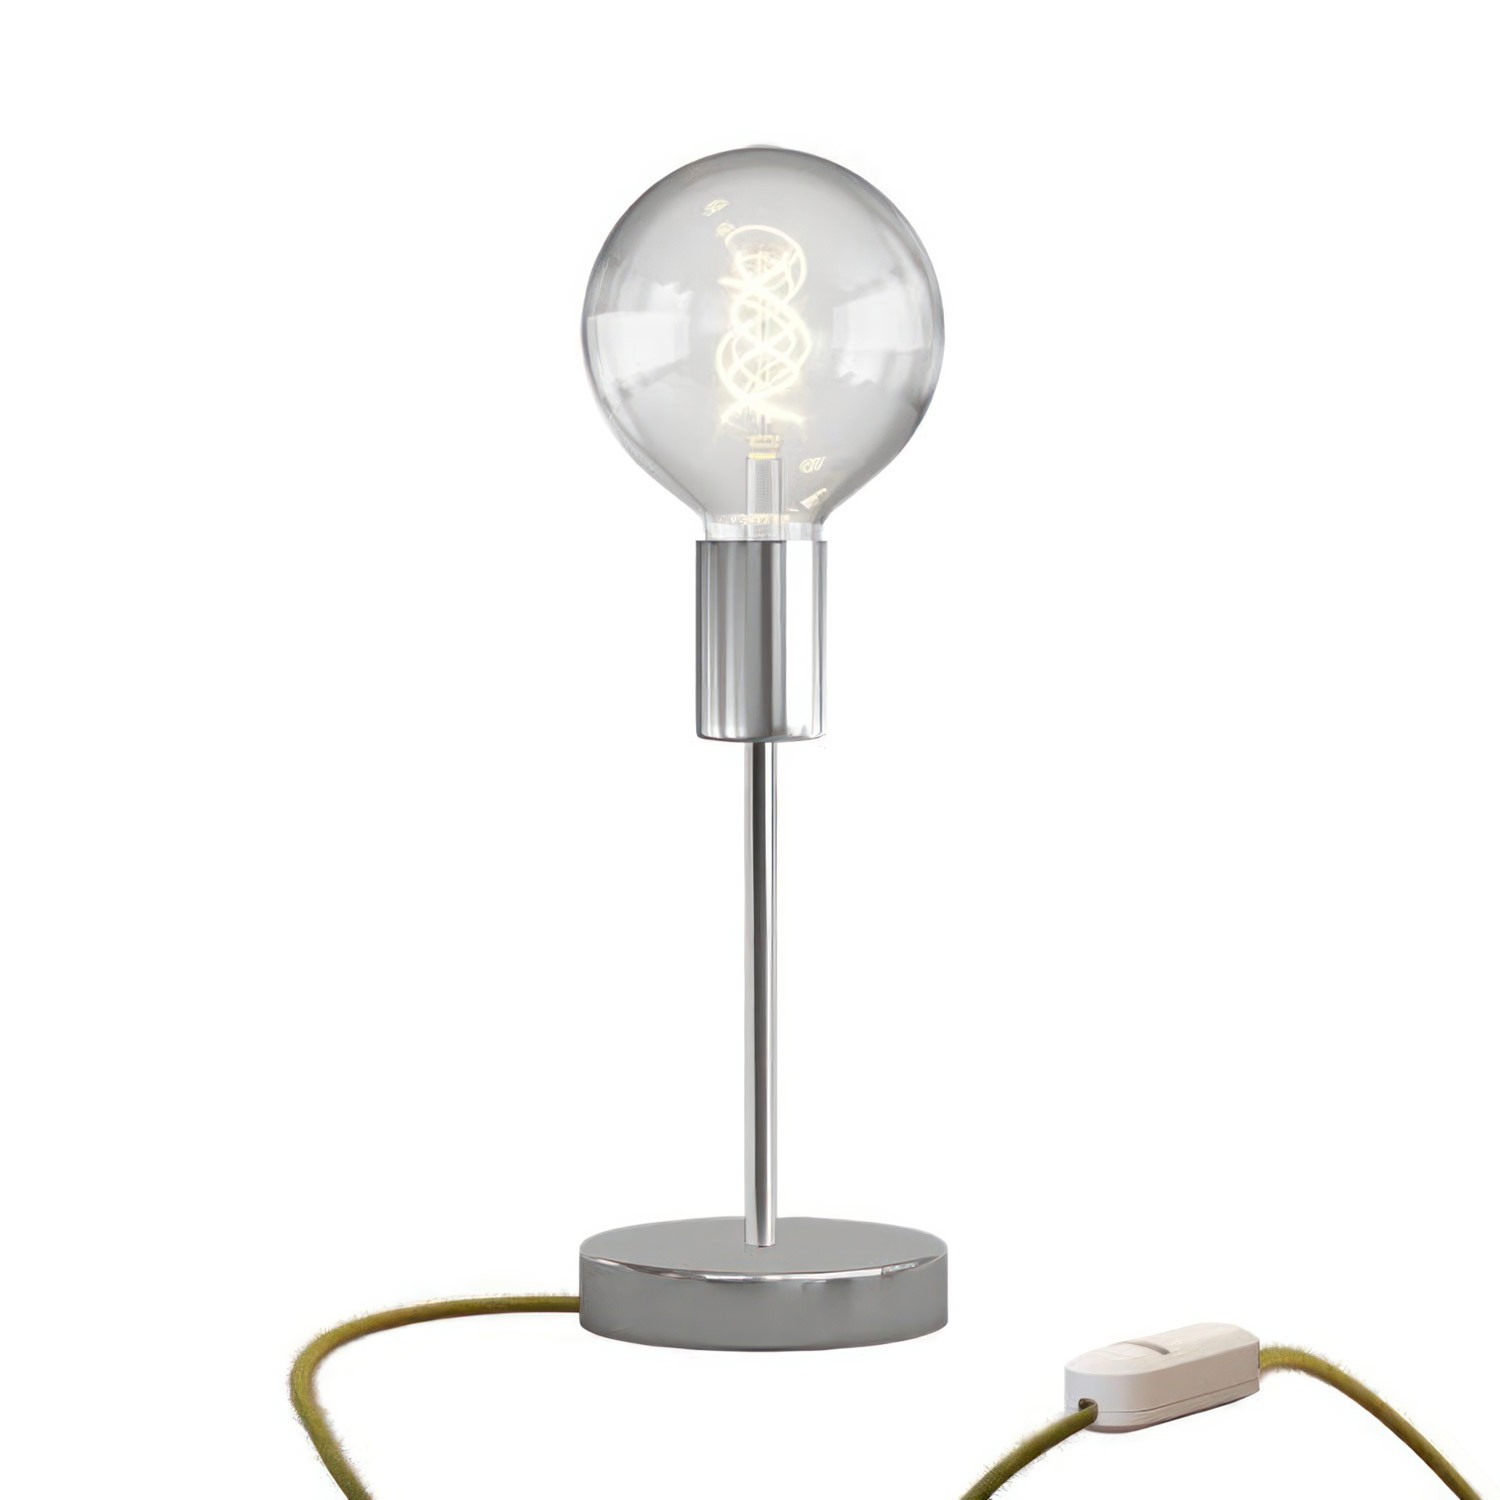 Alzaluce Globo Metal Table Lamp with UK plug